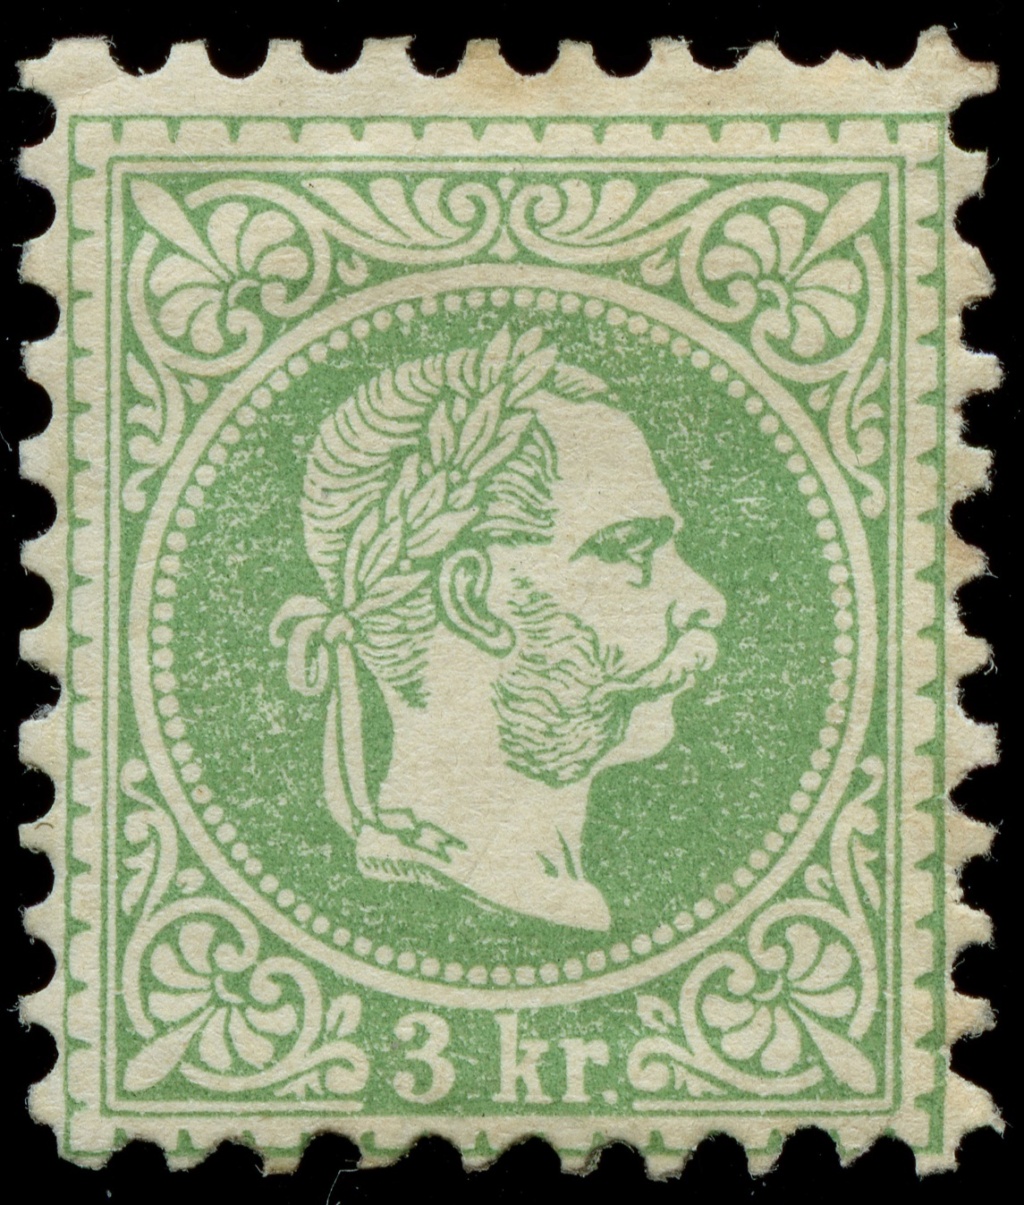 Freimarken-Ausgabe 1867 : Kopfbildnis Kaiser Franz Joseph I - Seite 23 Ank_3625